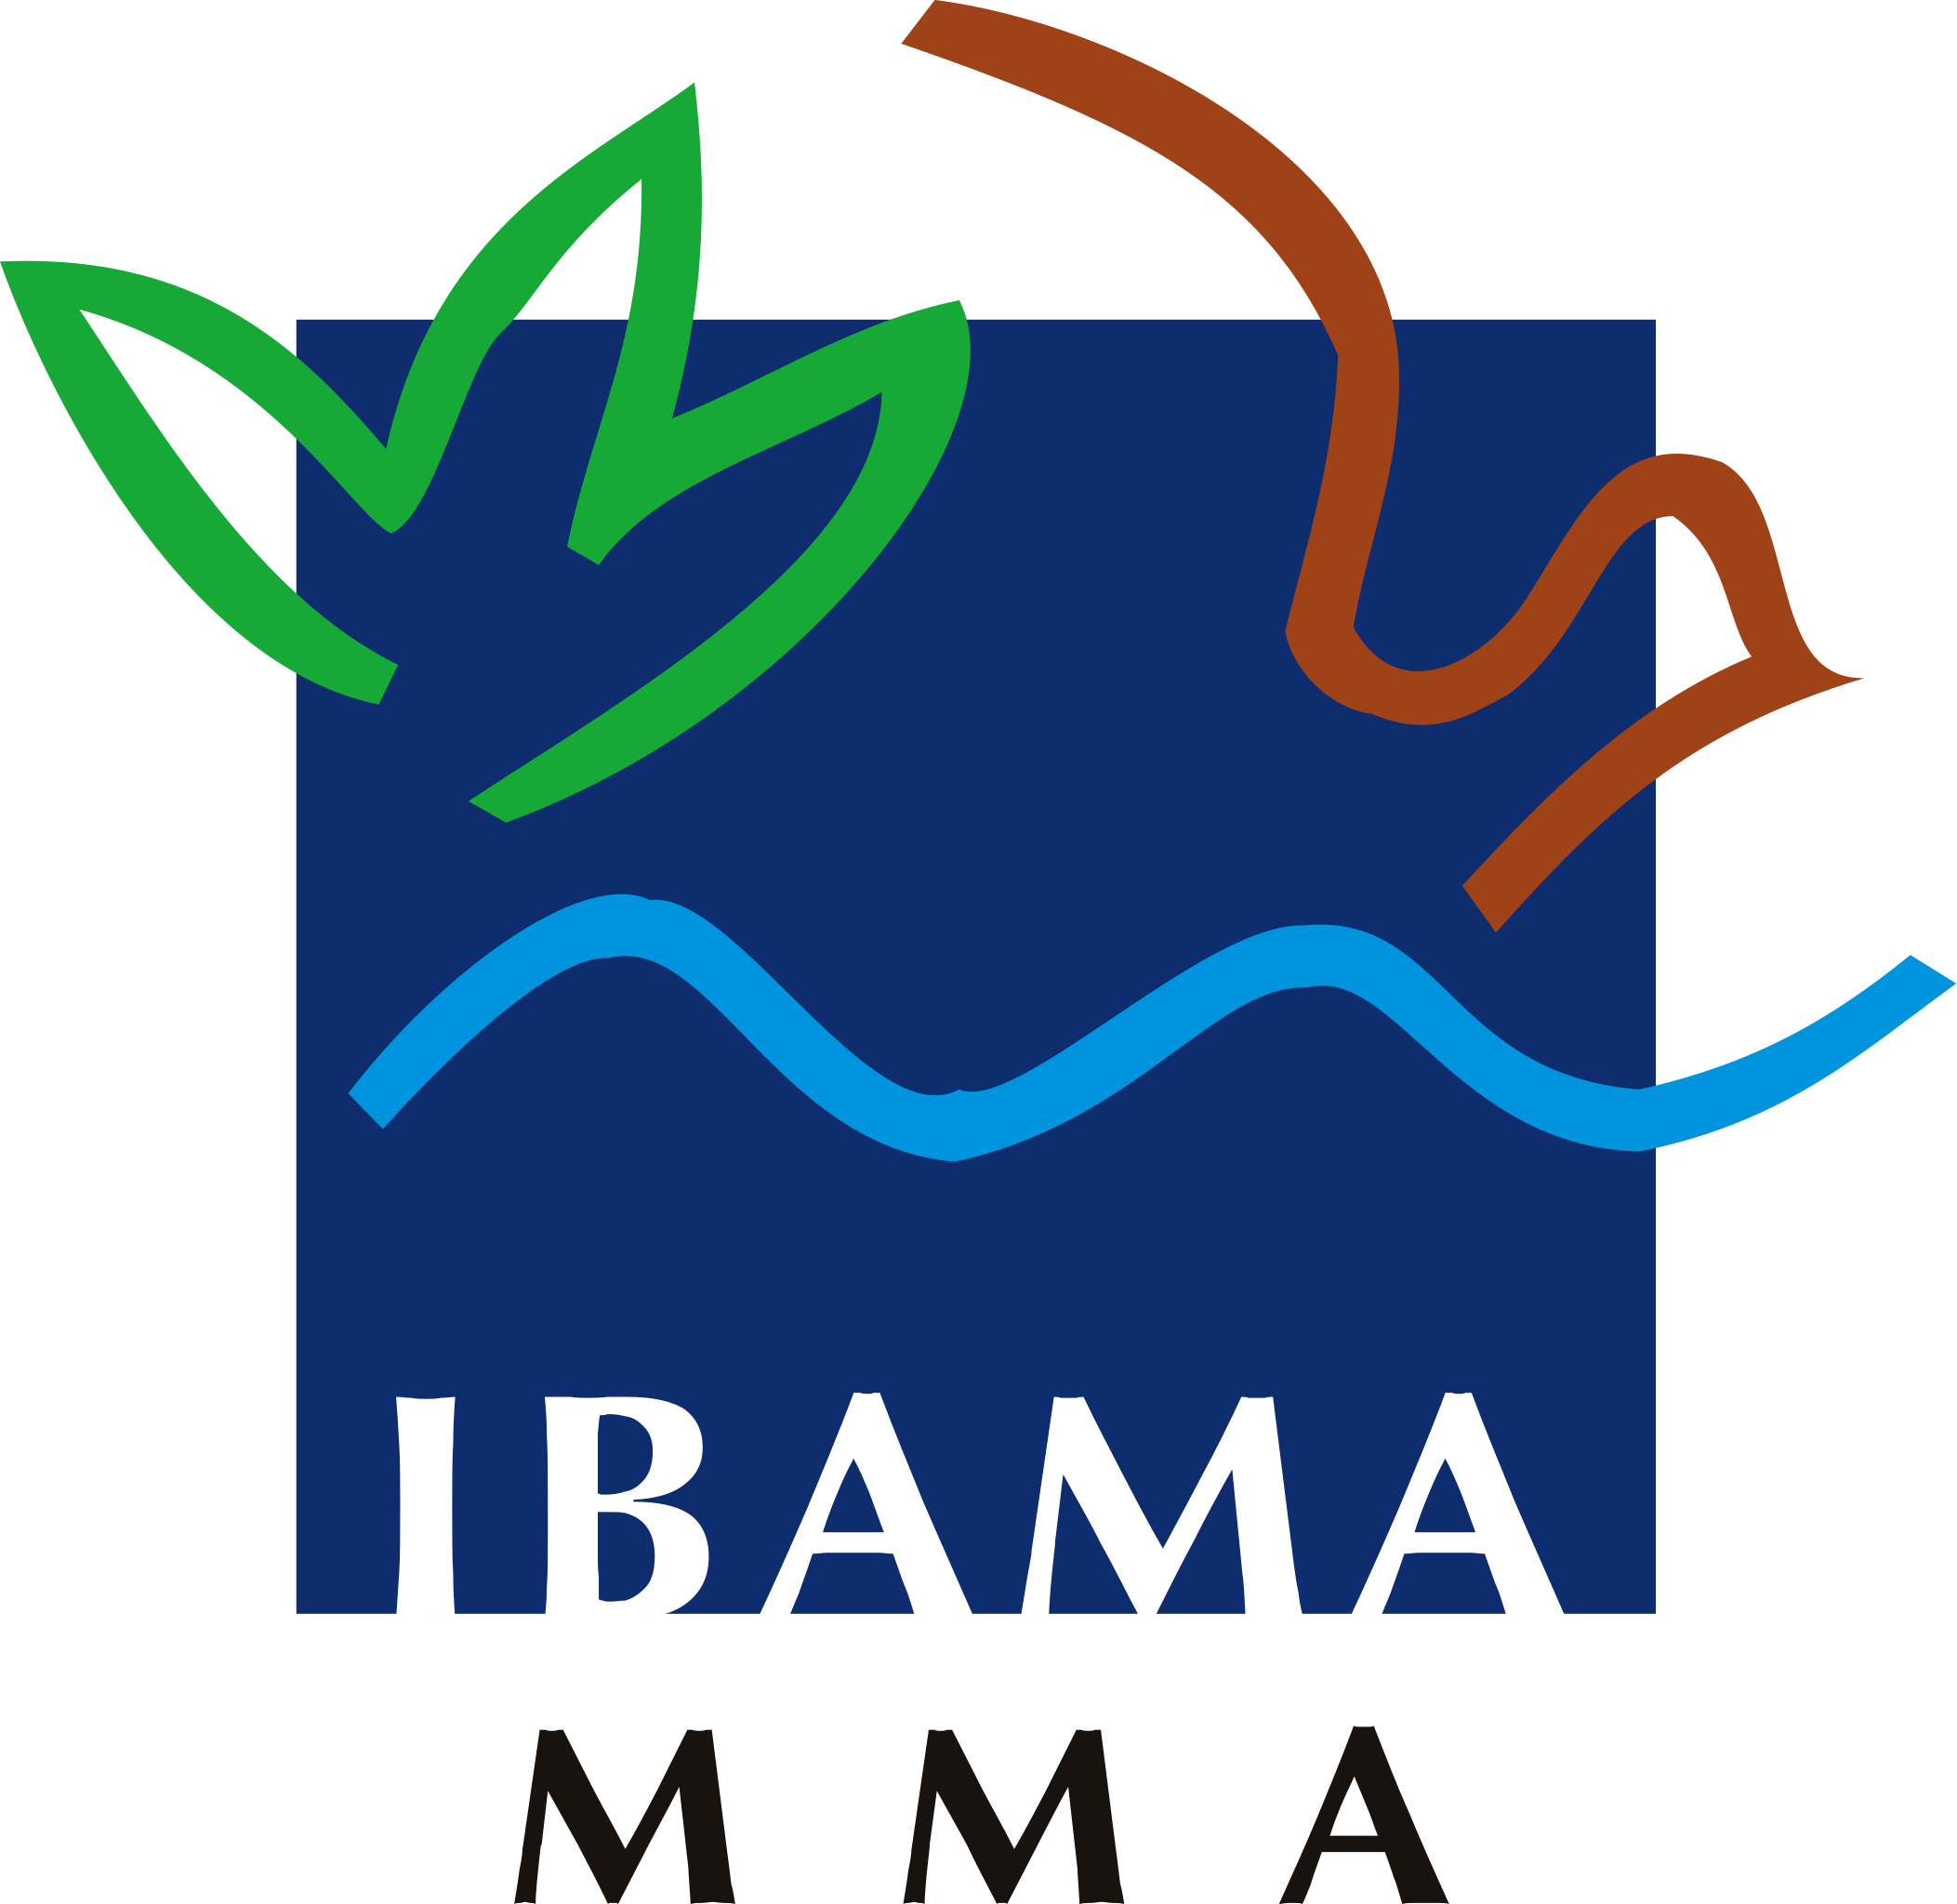 Certificado Ibama